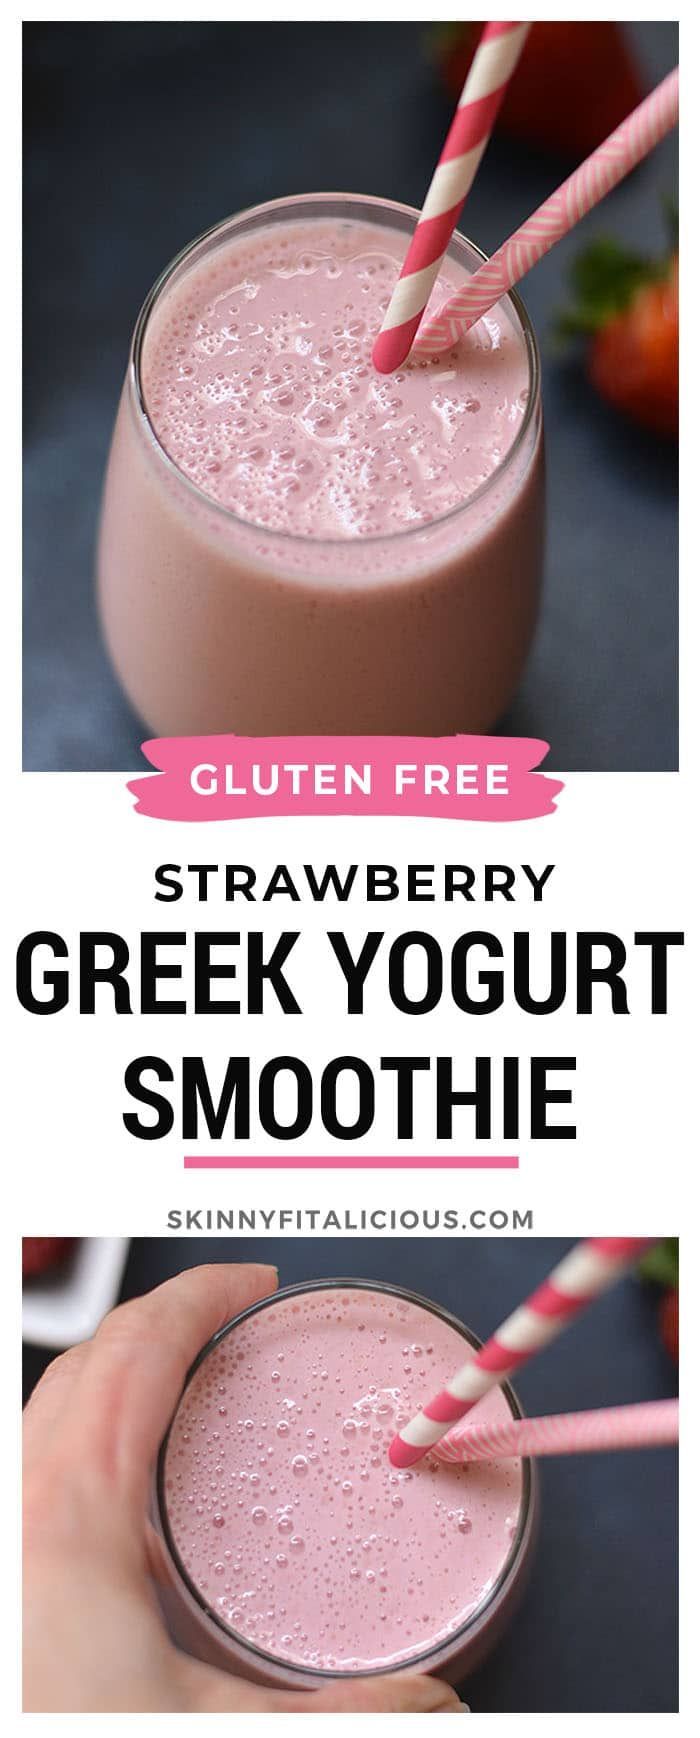 14 healthy recipes Protein greek yogurt ideas